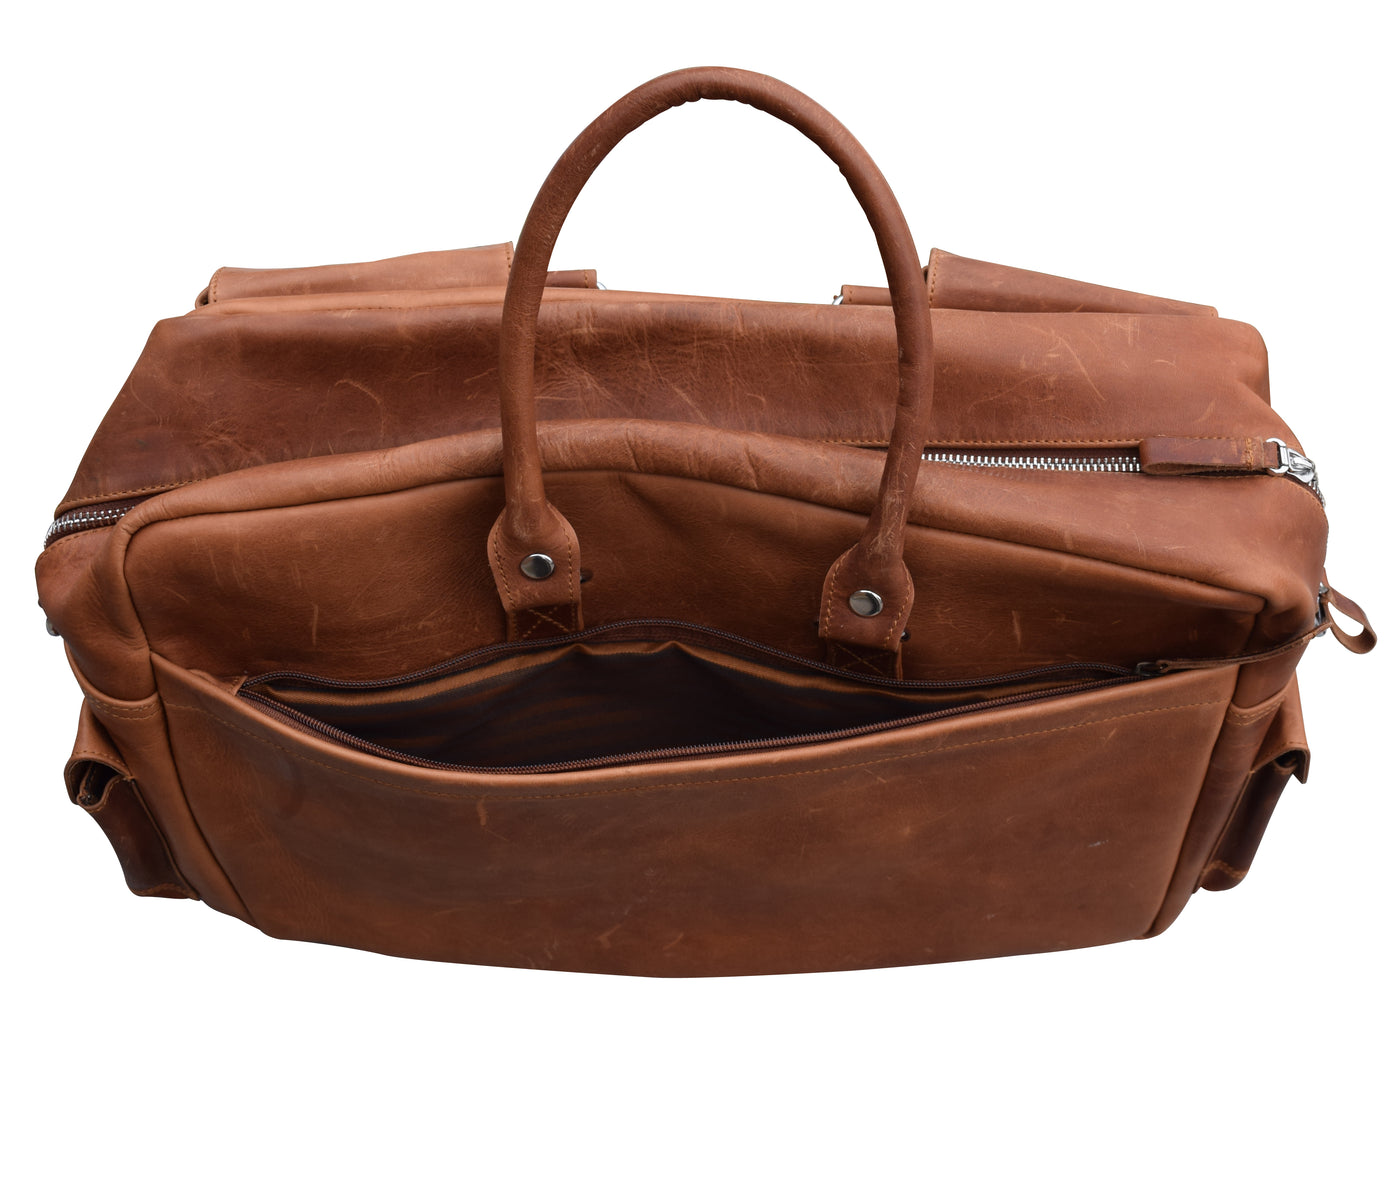 Excellent Design & Comfort Traveler Messenger bag